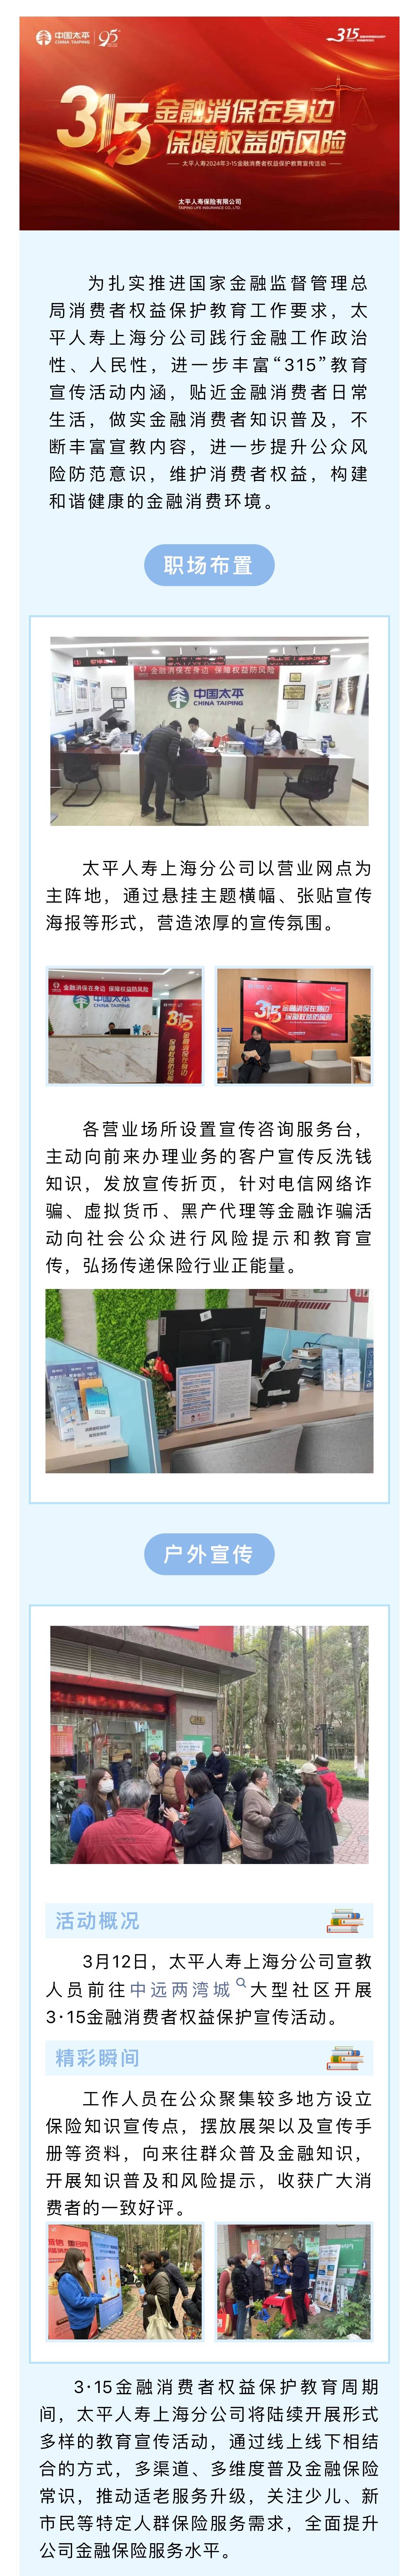 太平人寿上海分公司开展315金融消费者权益保护教育宣传活动